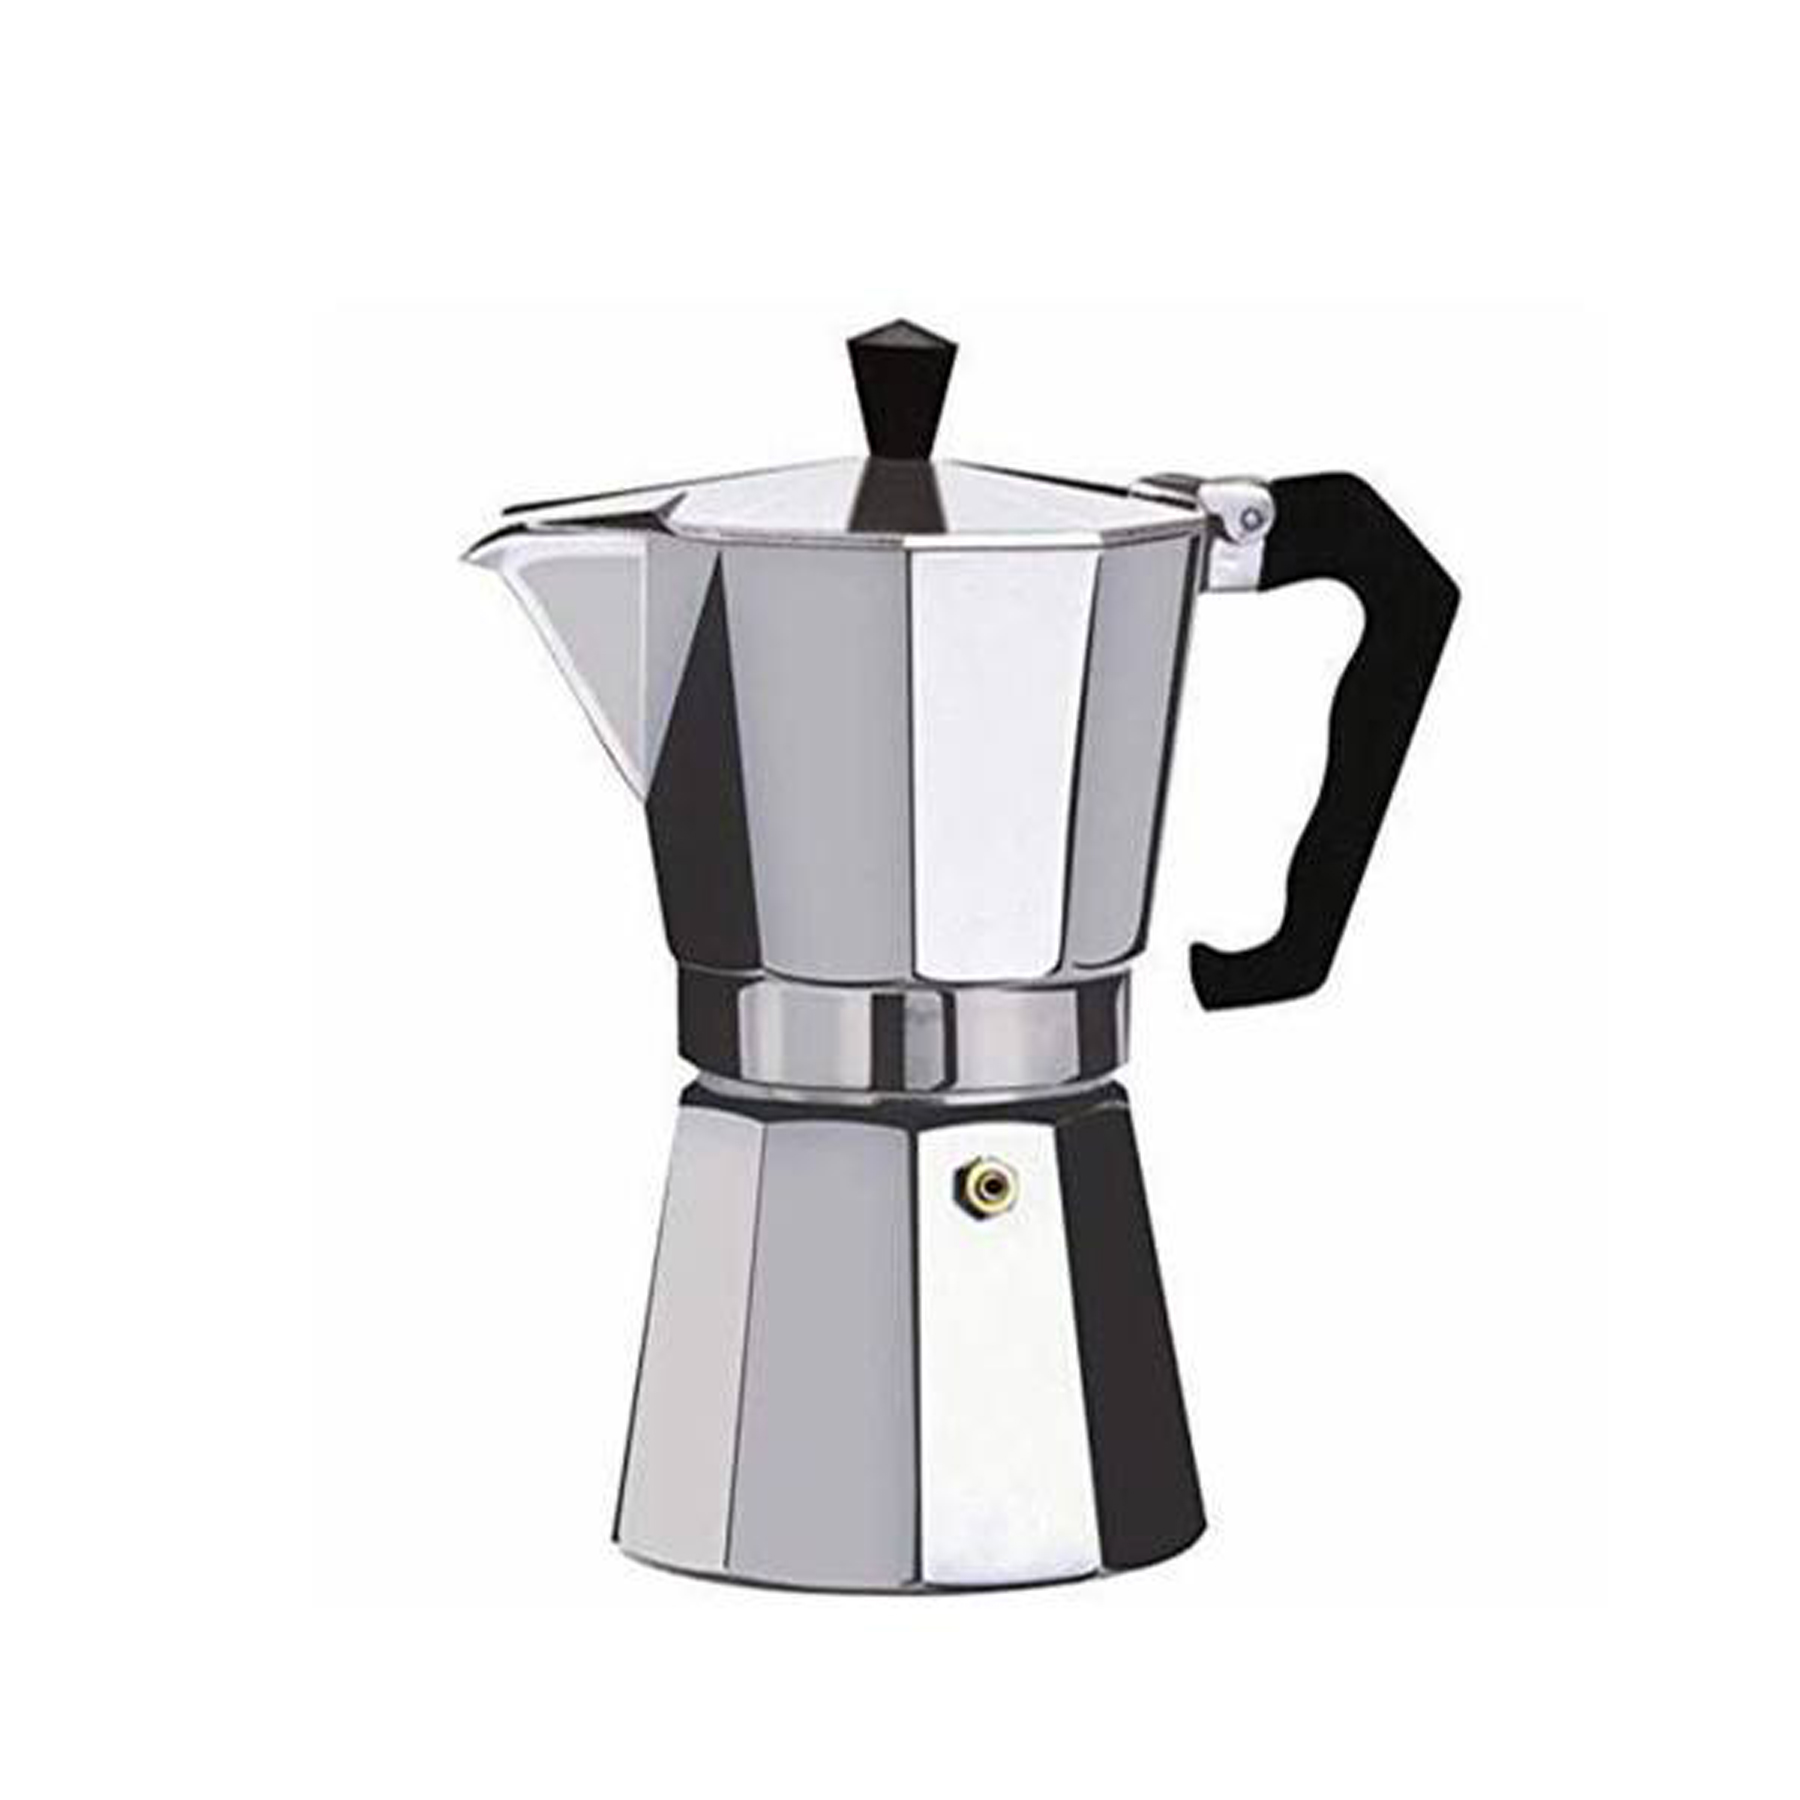 قهوه جوش مدل coffee 1 cup کد 34001